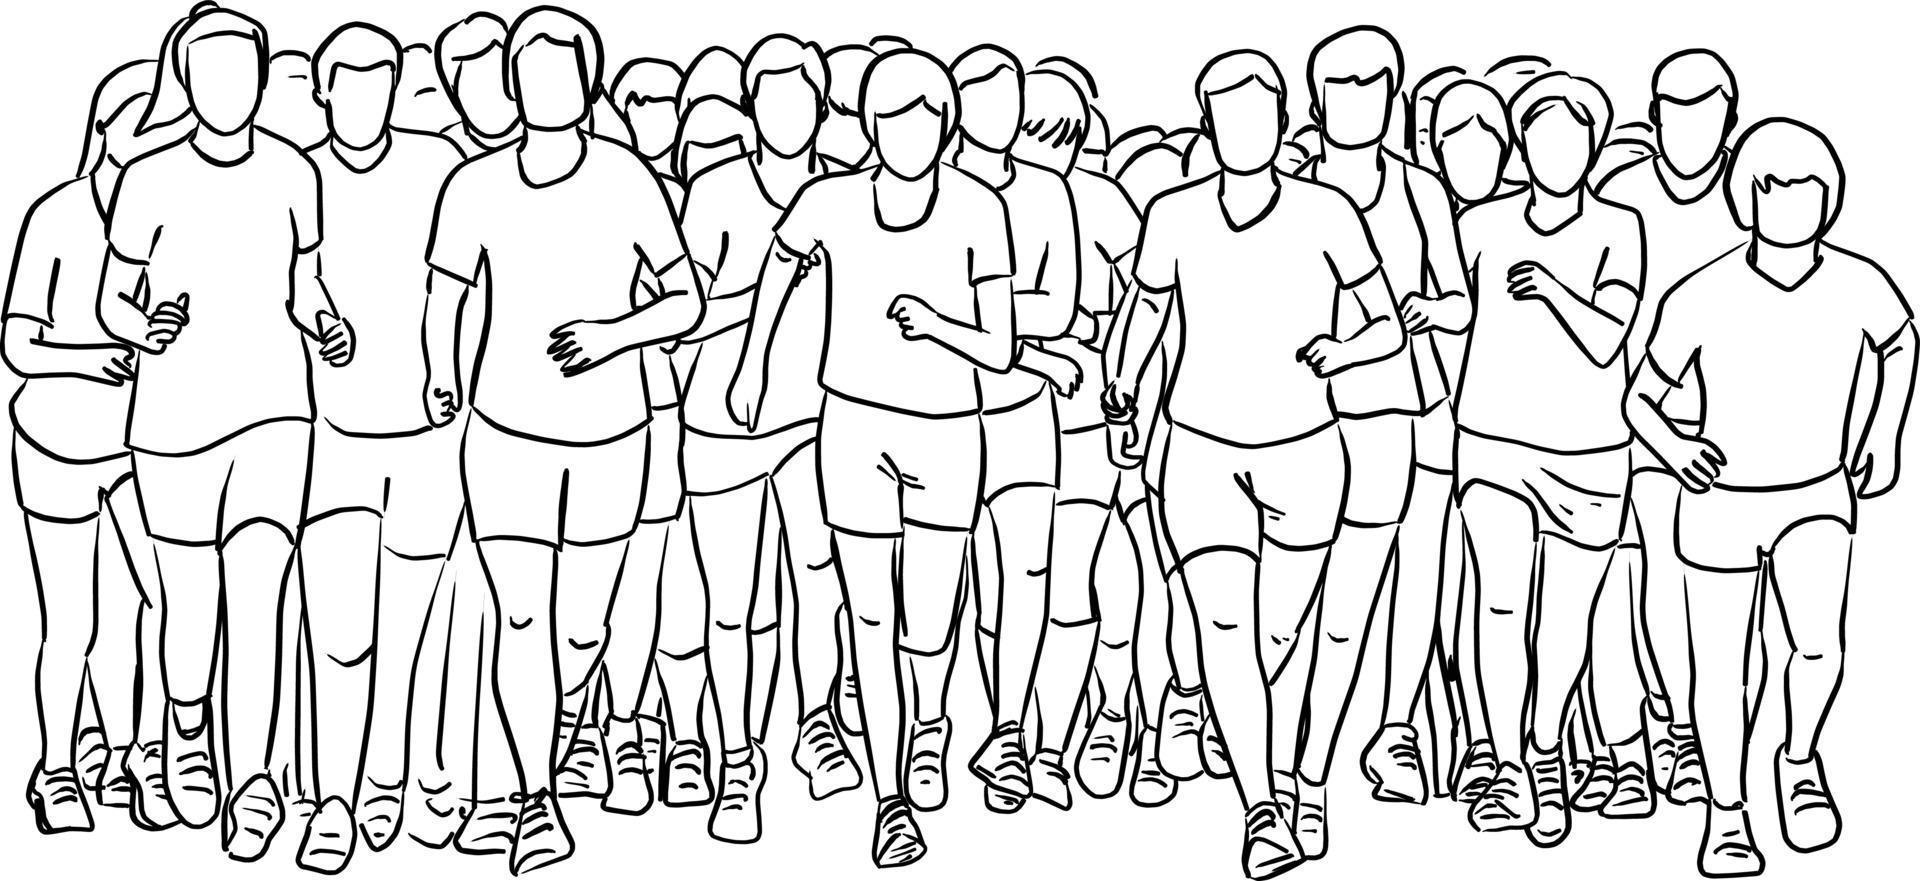 gente corriendo juntos dibujo de ilustración vectorial vector